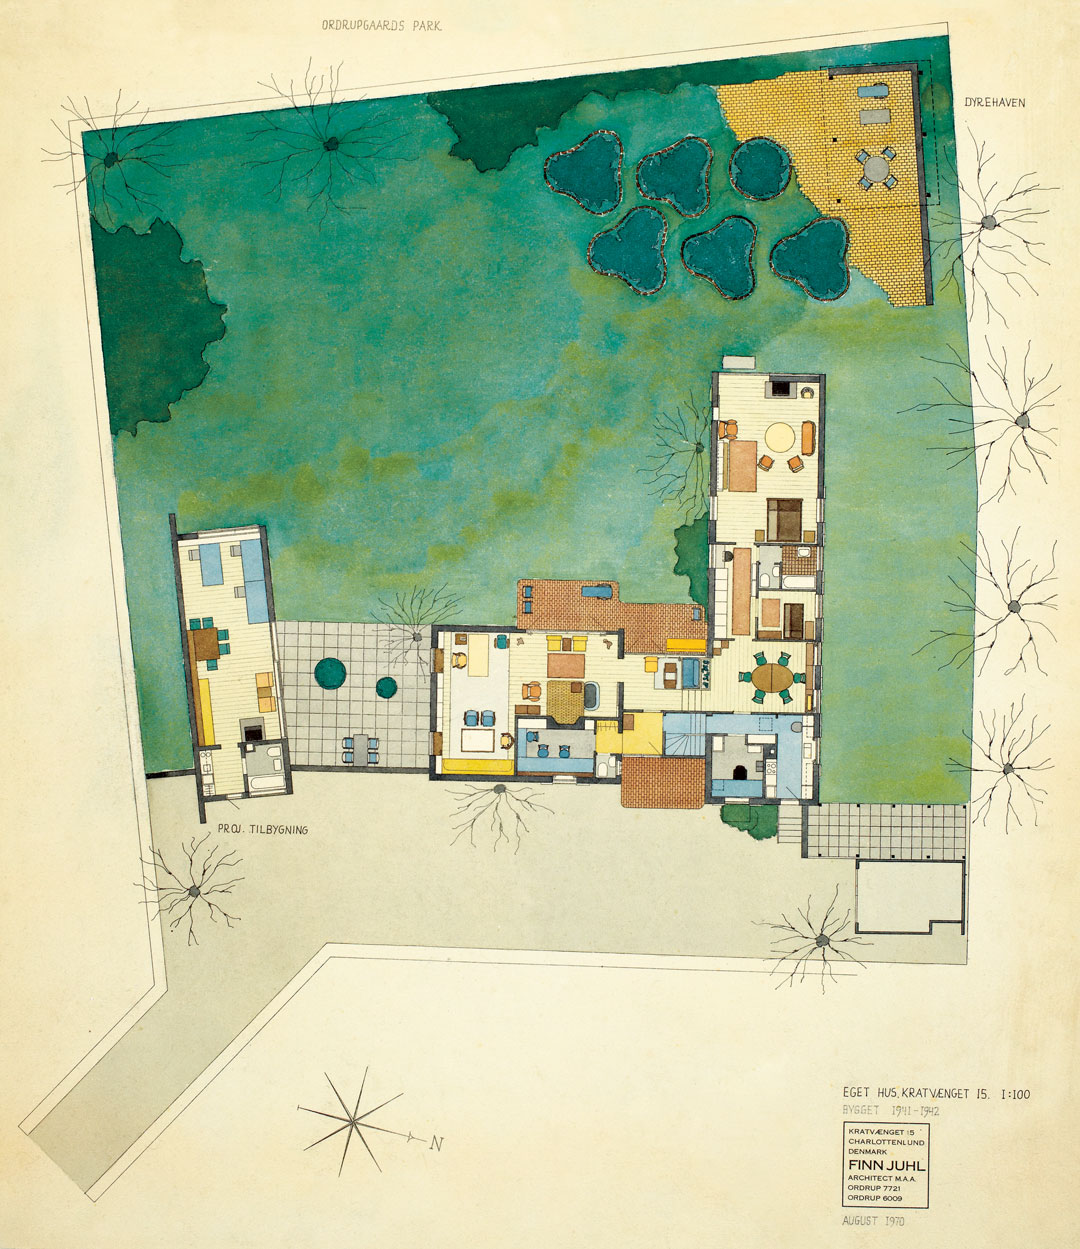 Juhl's house in Ordrup shown in a watercolour by Juhl from 1970